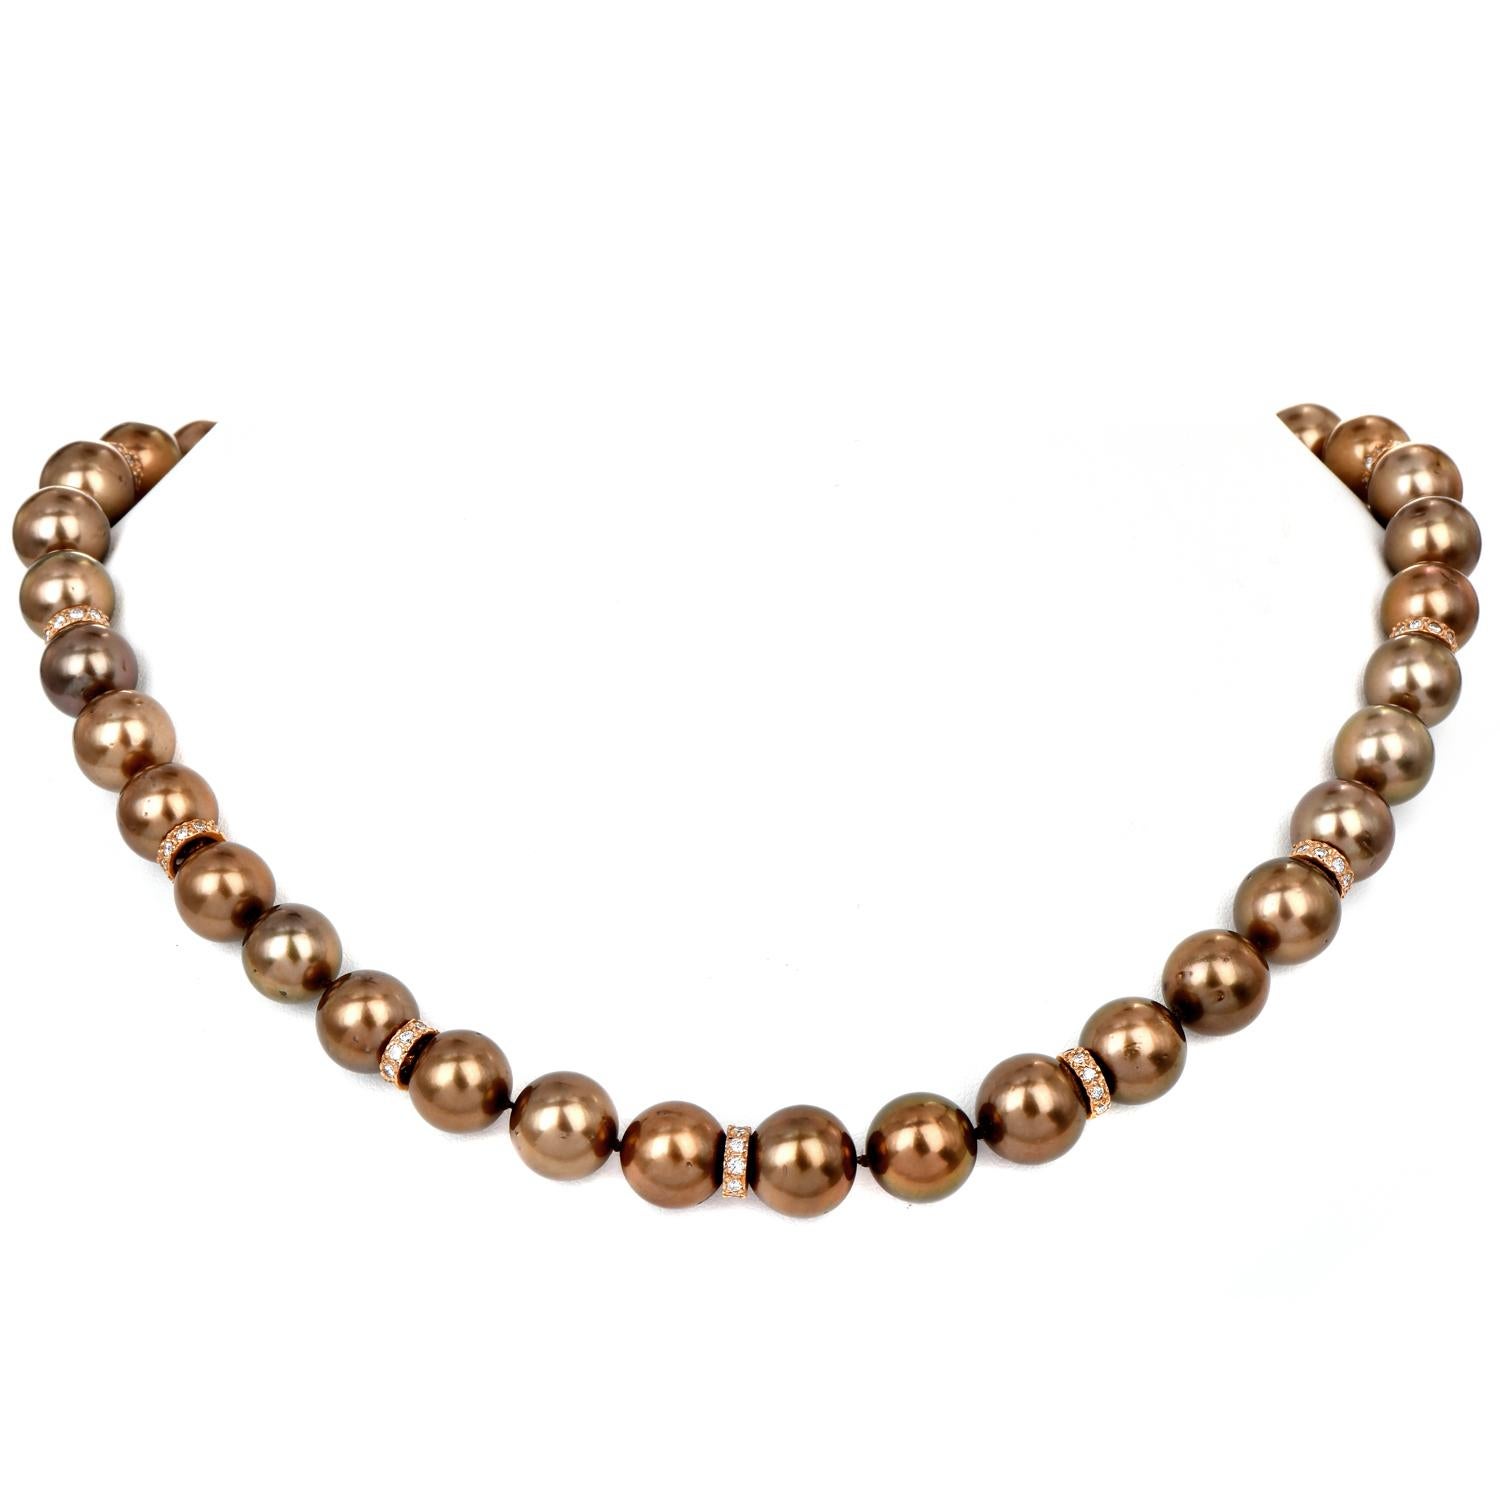 Schwelgen Sie in der Opulenz unserer braunen Tahiti-Perlenkette, einem wahren Meisterwerk der Juwelierkunst. Die Halskette besteht aus 10 Gliedern aus 18-karätigem Roségold, die alle 3 Perlen mit Diamanten akzentuiert sind, wodurch ein exquisites